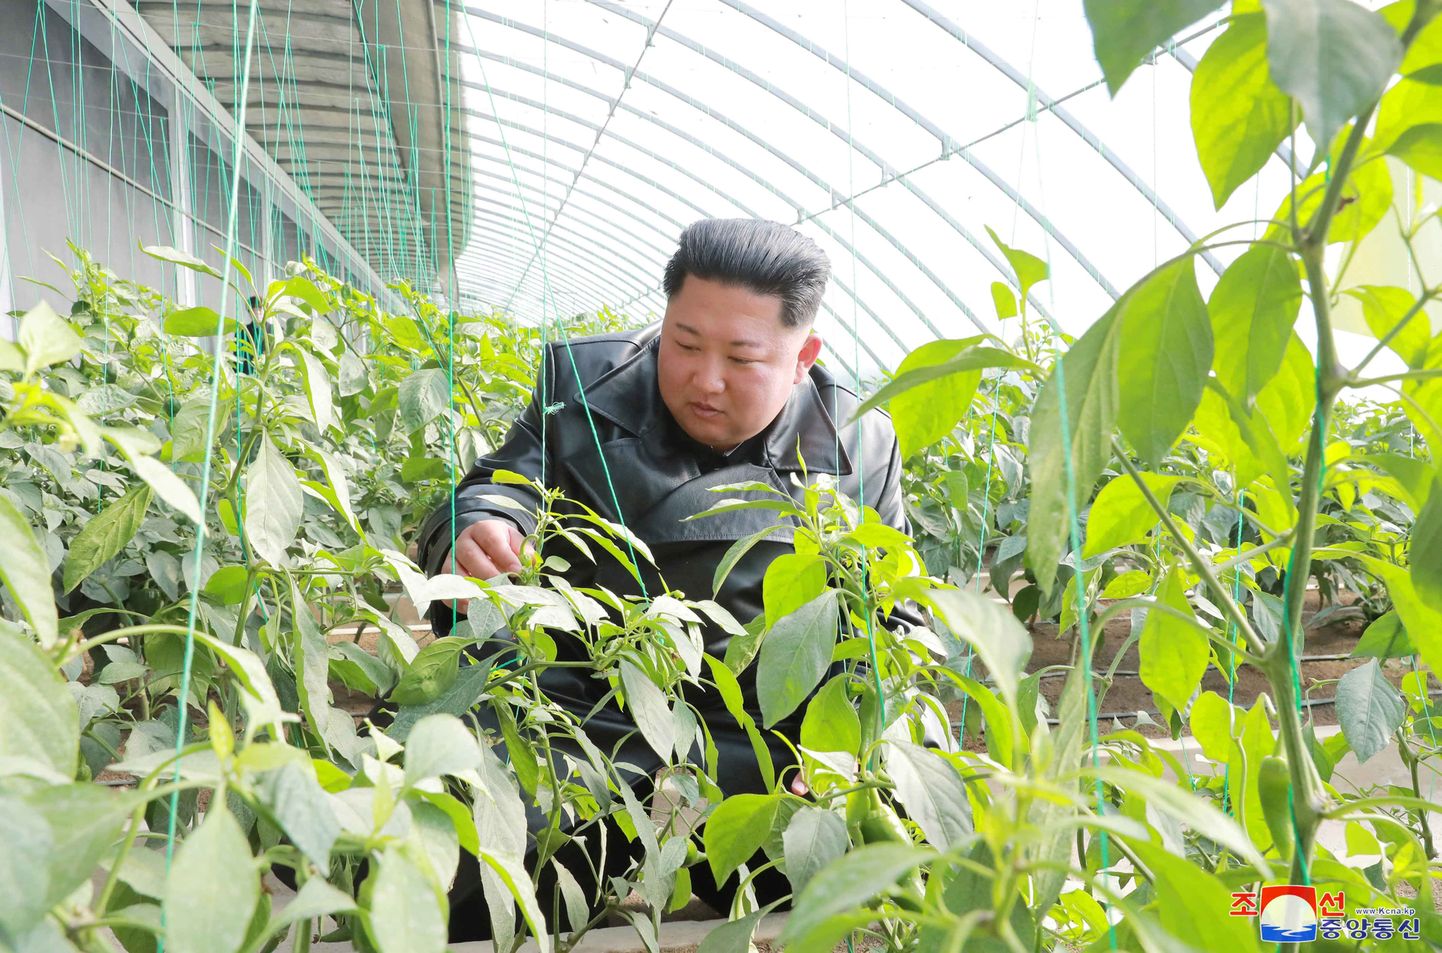 Põhja-Korea liider Kim Jong-un külastas detsembris 2019 Kyongsongi maakonnas Jungphyongis asuvat farmi. Pildil tutvub ta kasvuhoones kasvatavate taimedega